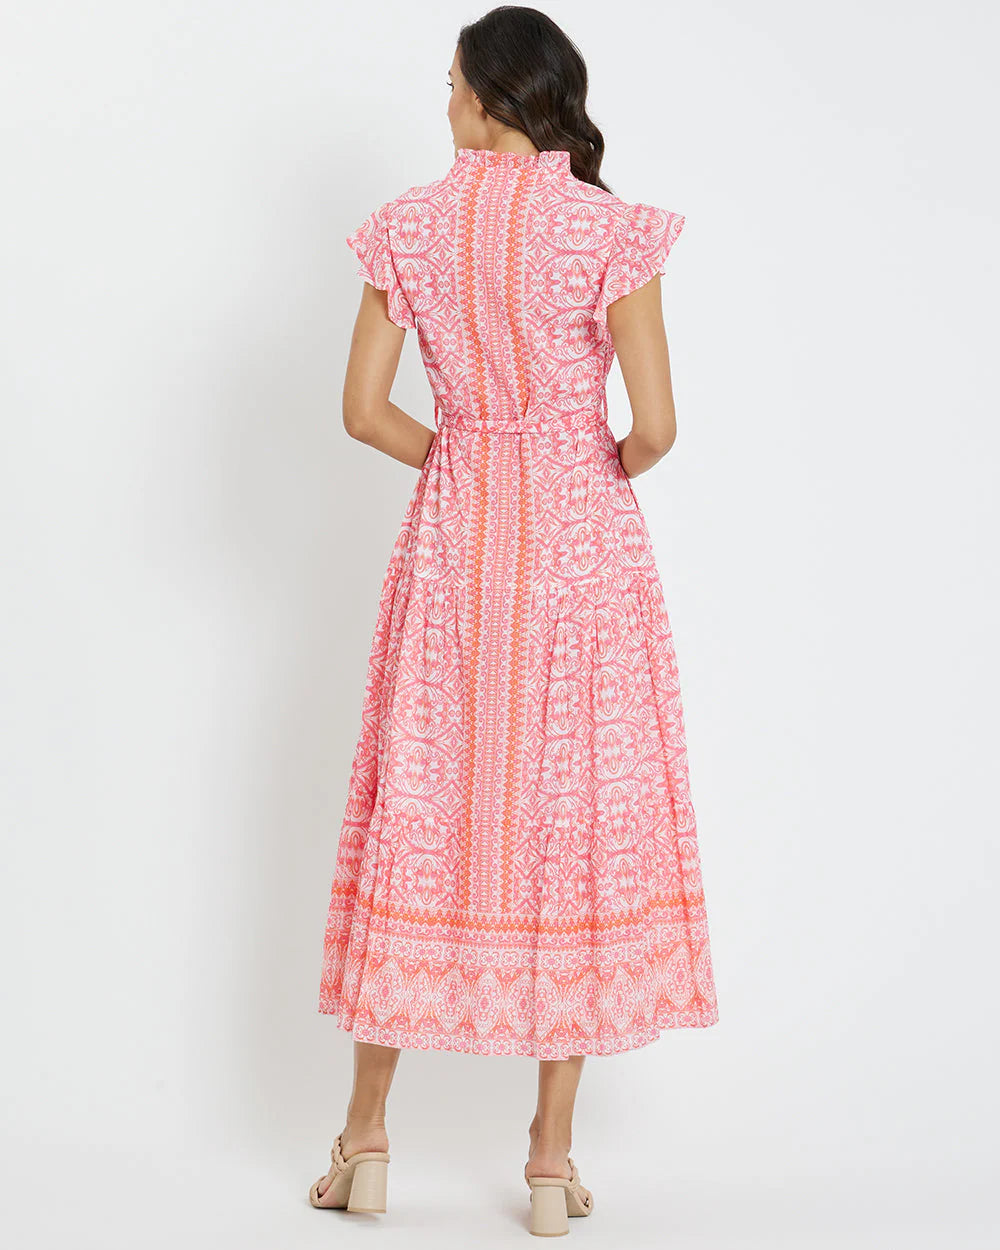 Jude Connally Mirabella Dress - Calico Garden Pink Apricot